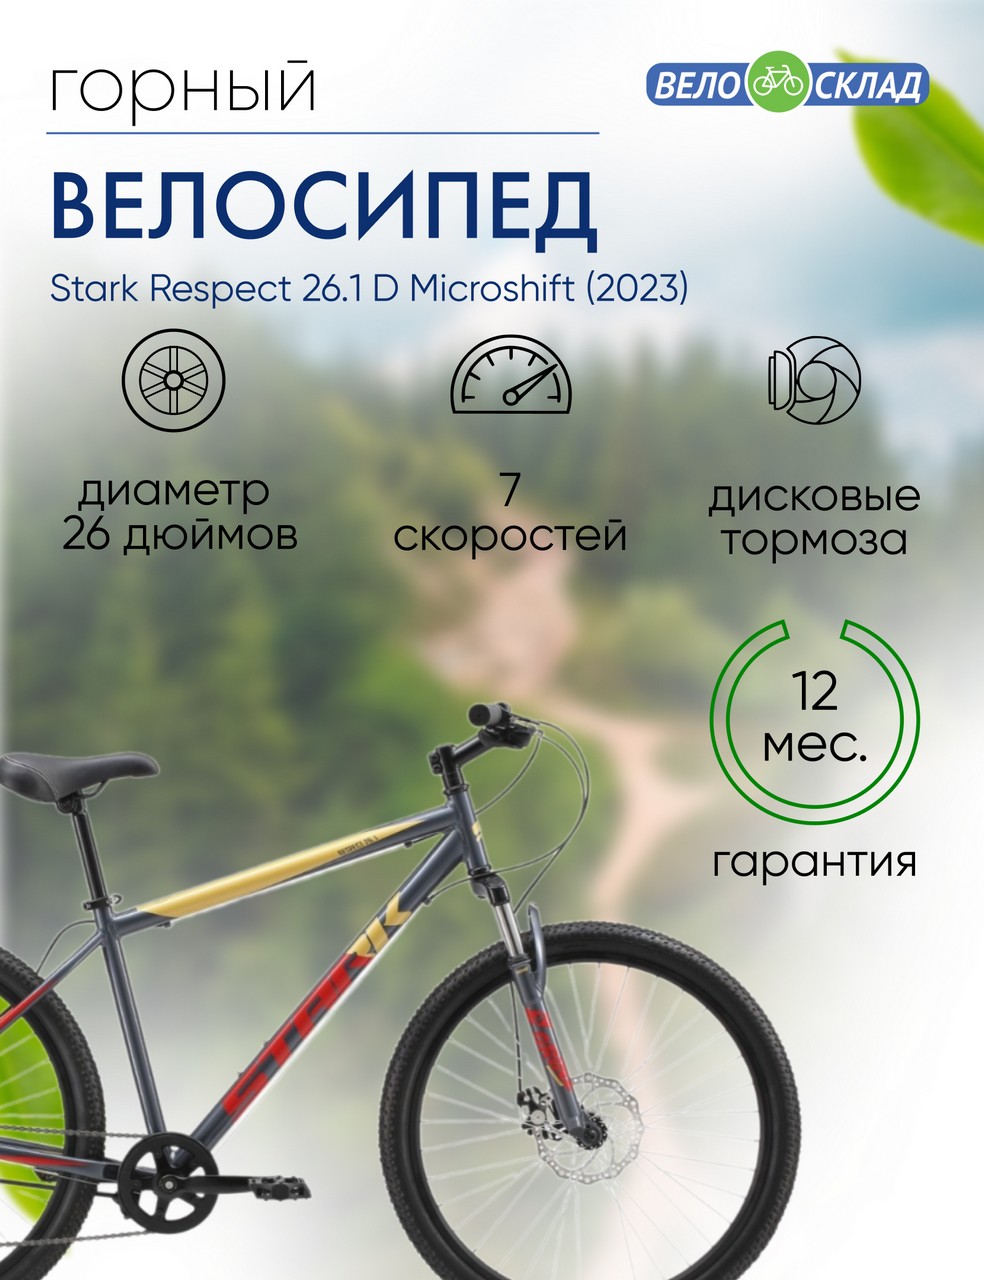 фото Горный велосипед stark respect 26.1 d microshift, год 2023, цвет серебристый-красный, ростовка 18